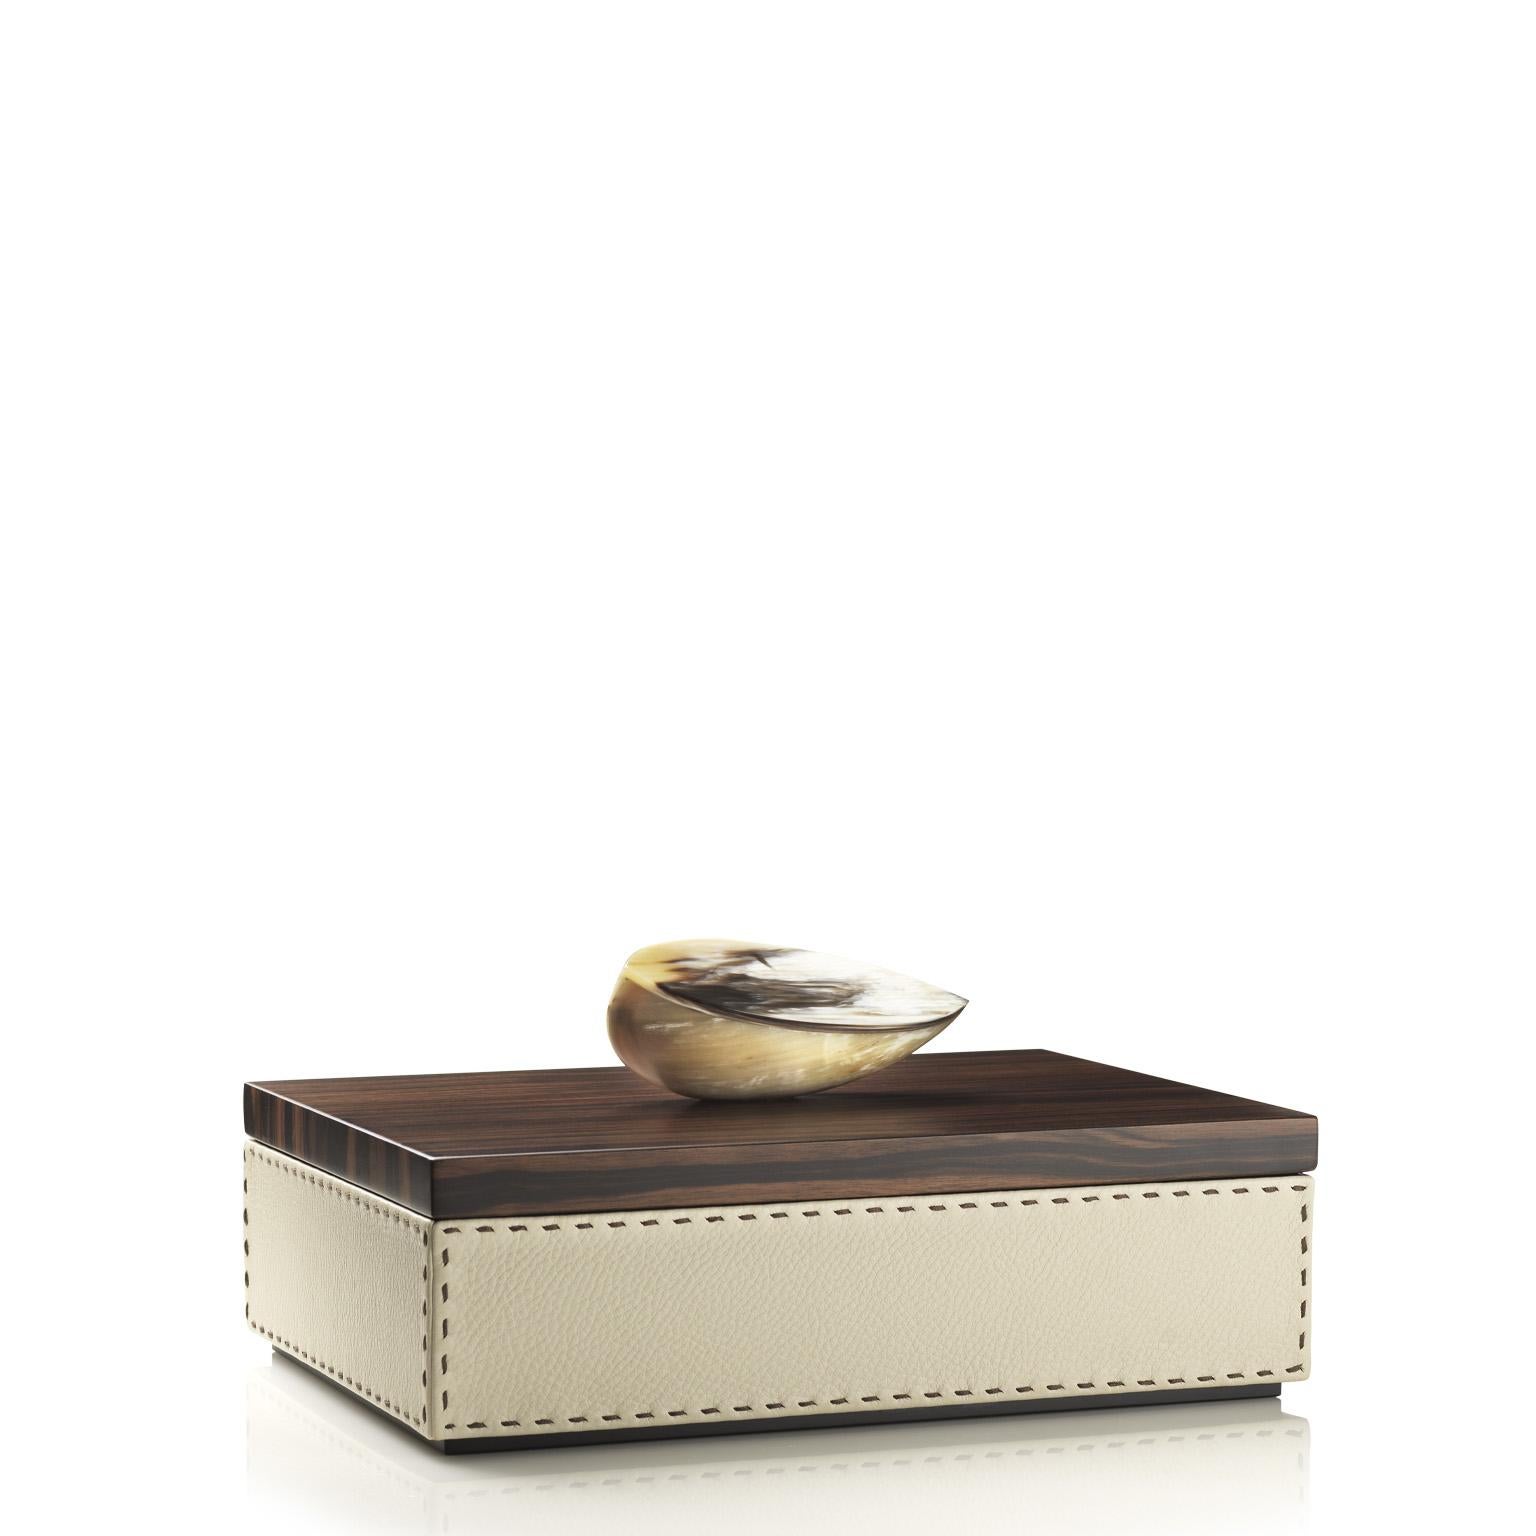 Capricia Box in Pebbled leather with Handle in Corno Italiano, Mod. 4472 In New Condition For Sale In Recanati, Macerata